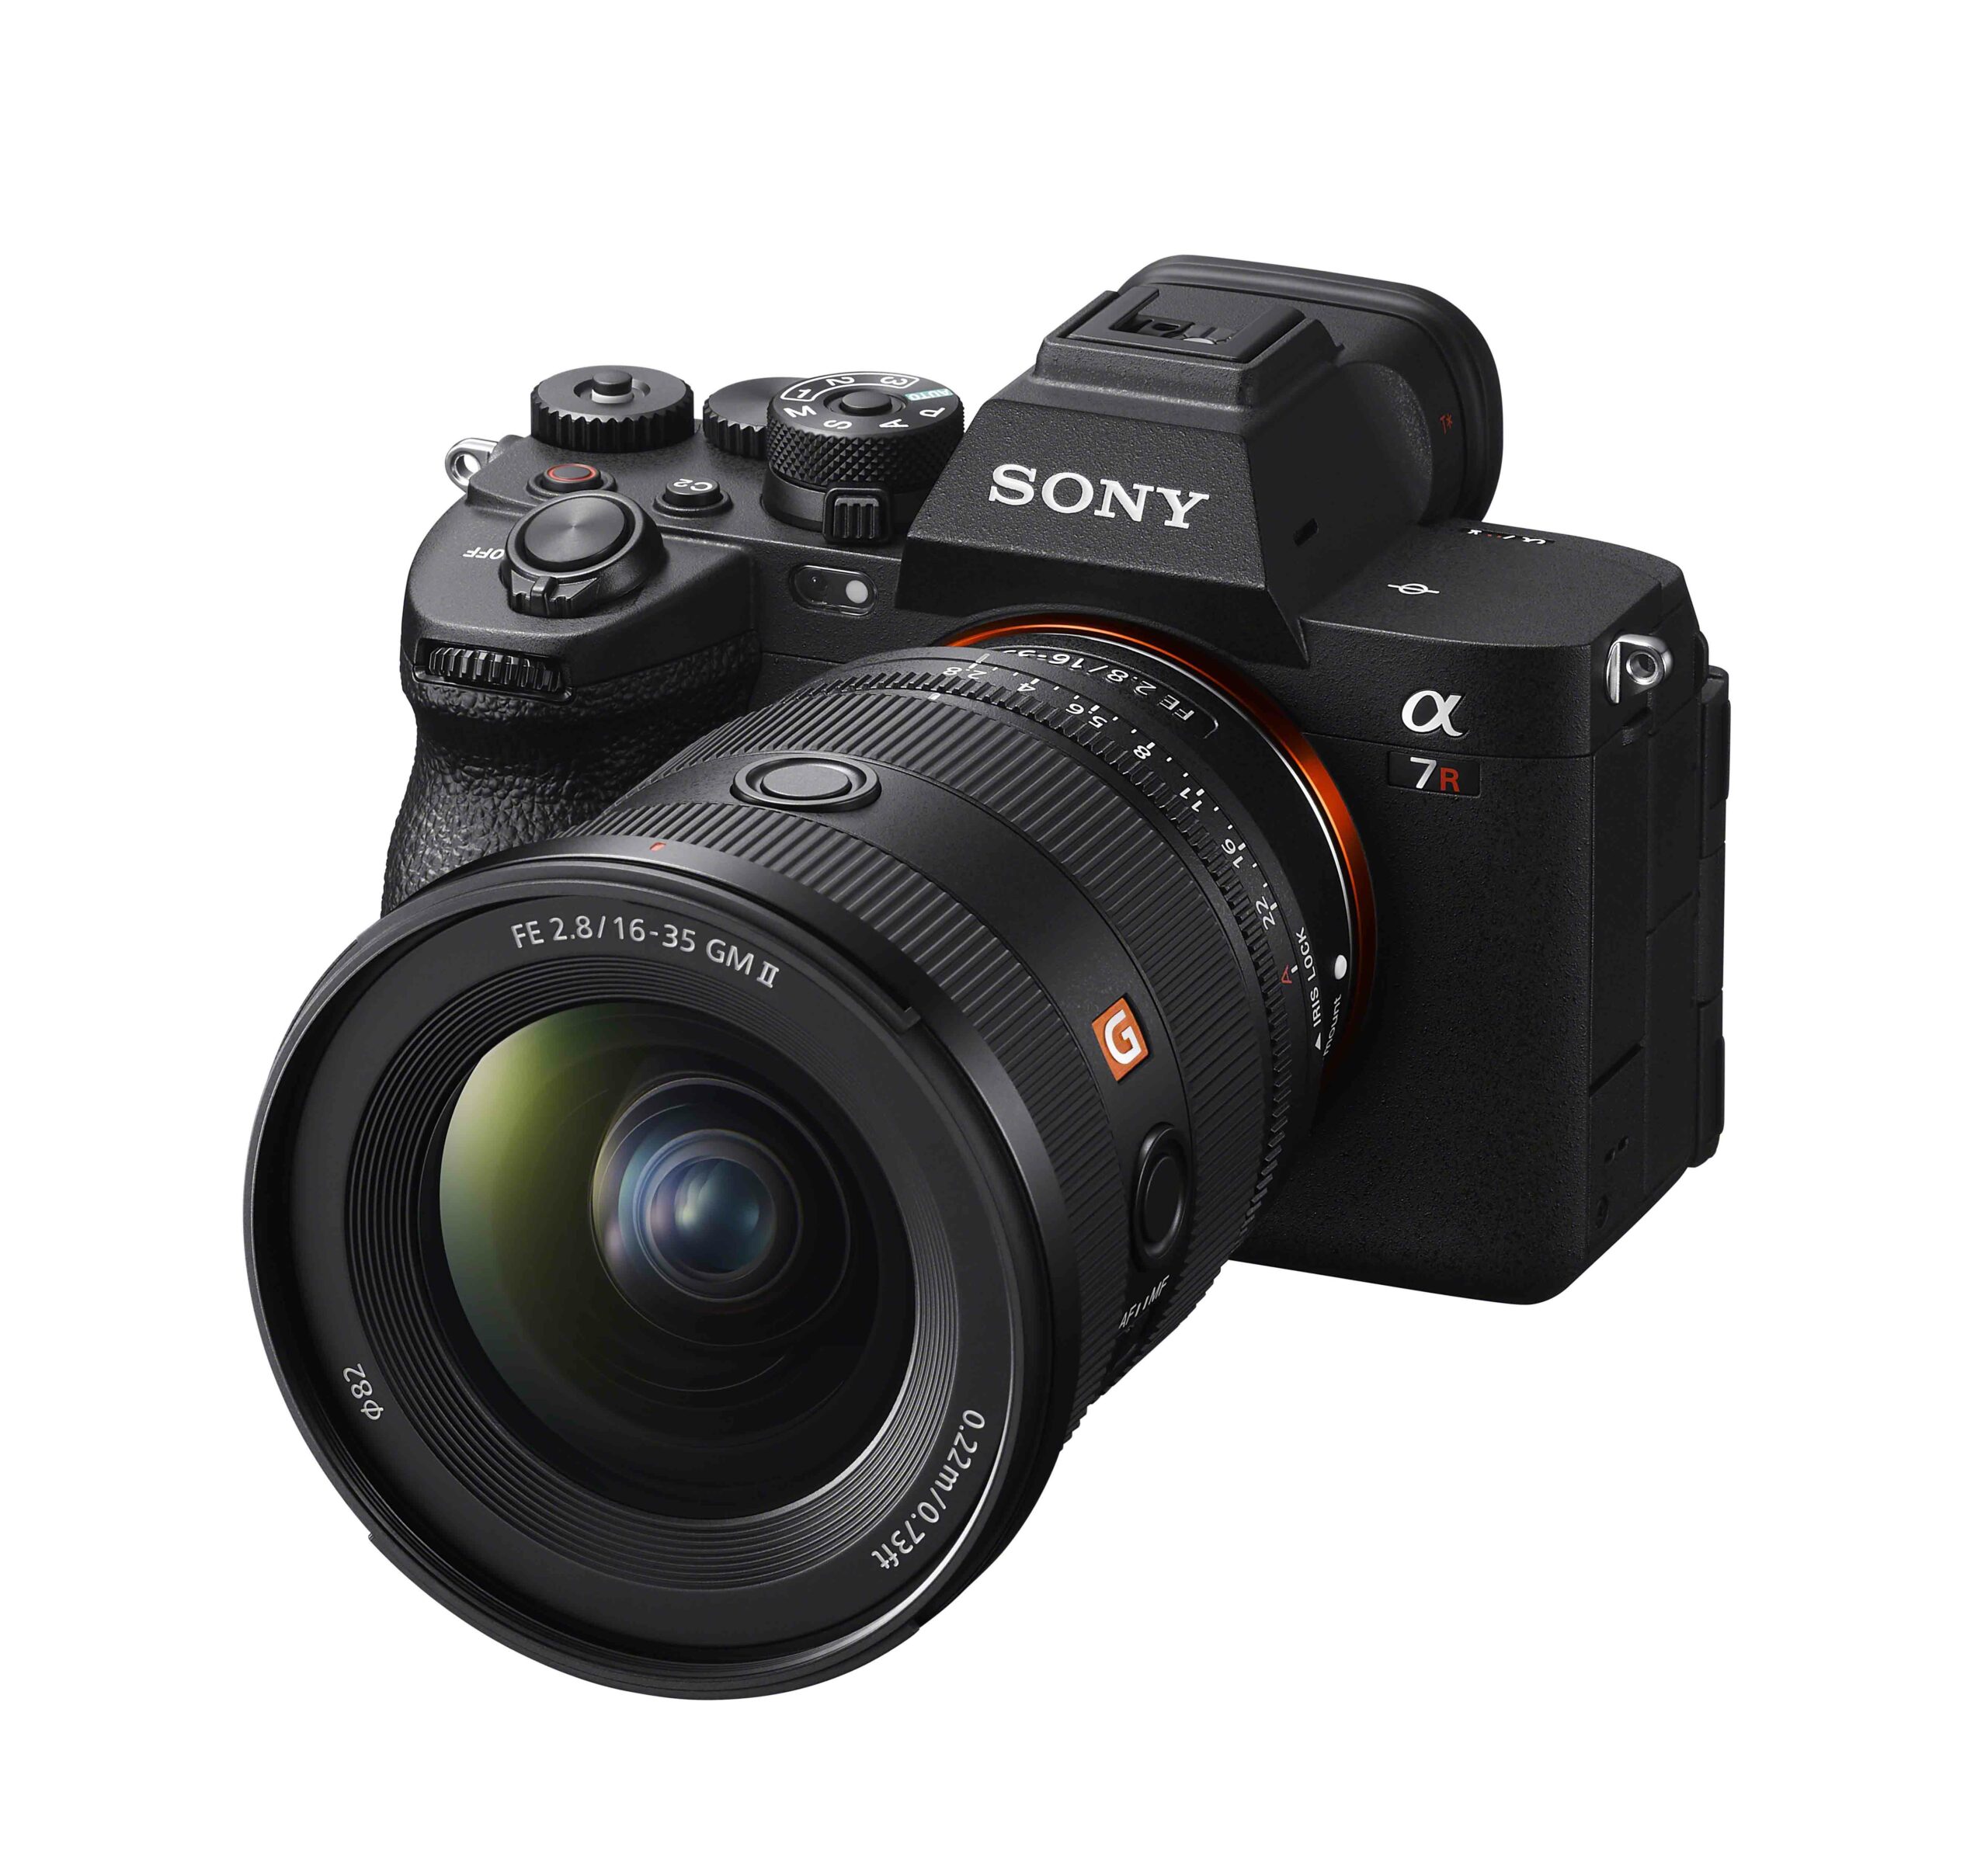 Sony 全新 FE 16-35mm F2.8 GM II 全片幅廣角變焦鏡頭 同級鏡頭最輕量小巧設計 優異畫質與自動對焦性能 @3C 達人廖阿輝